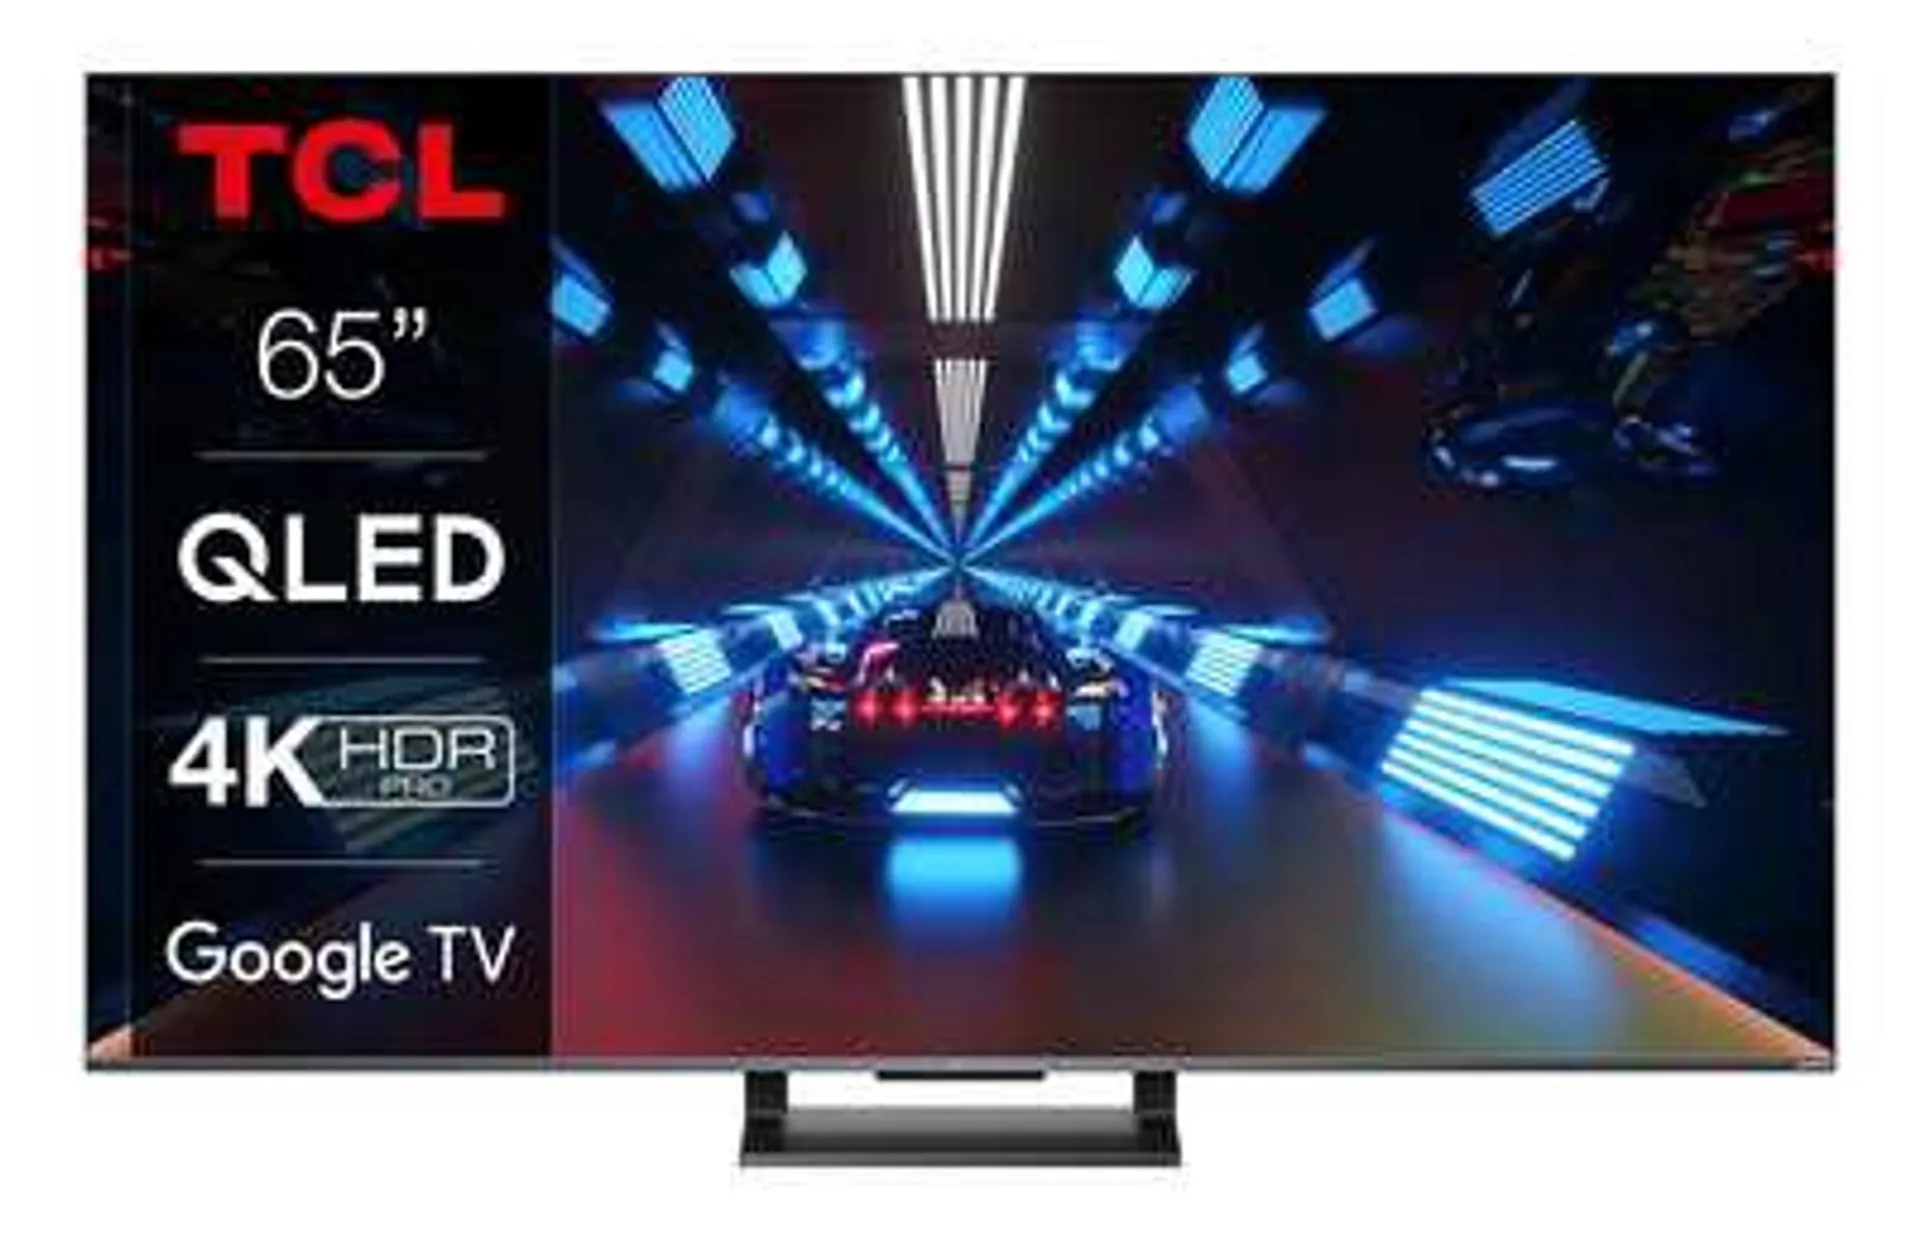 Dimensioni schermo (pollici) 65 - Smart Tv - Risoluzione 4K